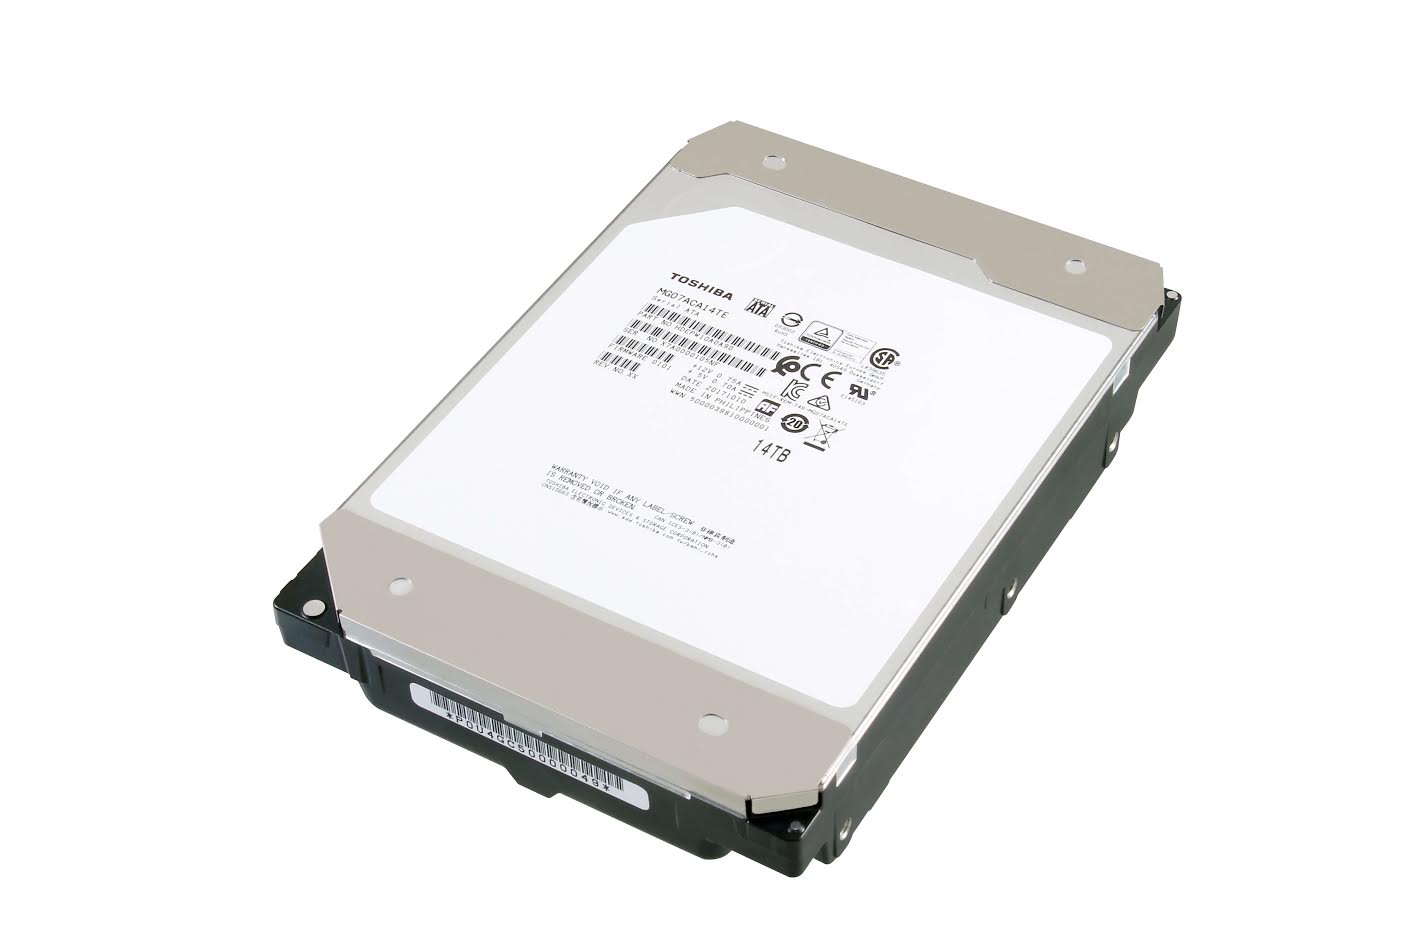 老技术还是最可靠？Toshiba宣布推出传统式磁记录企业级硬盘MG07系列